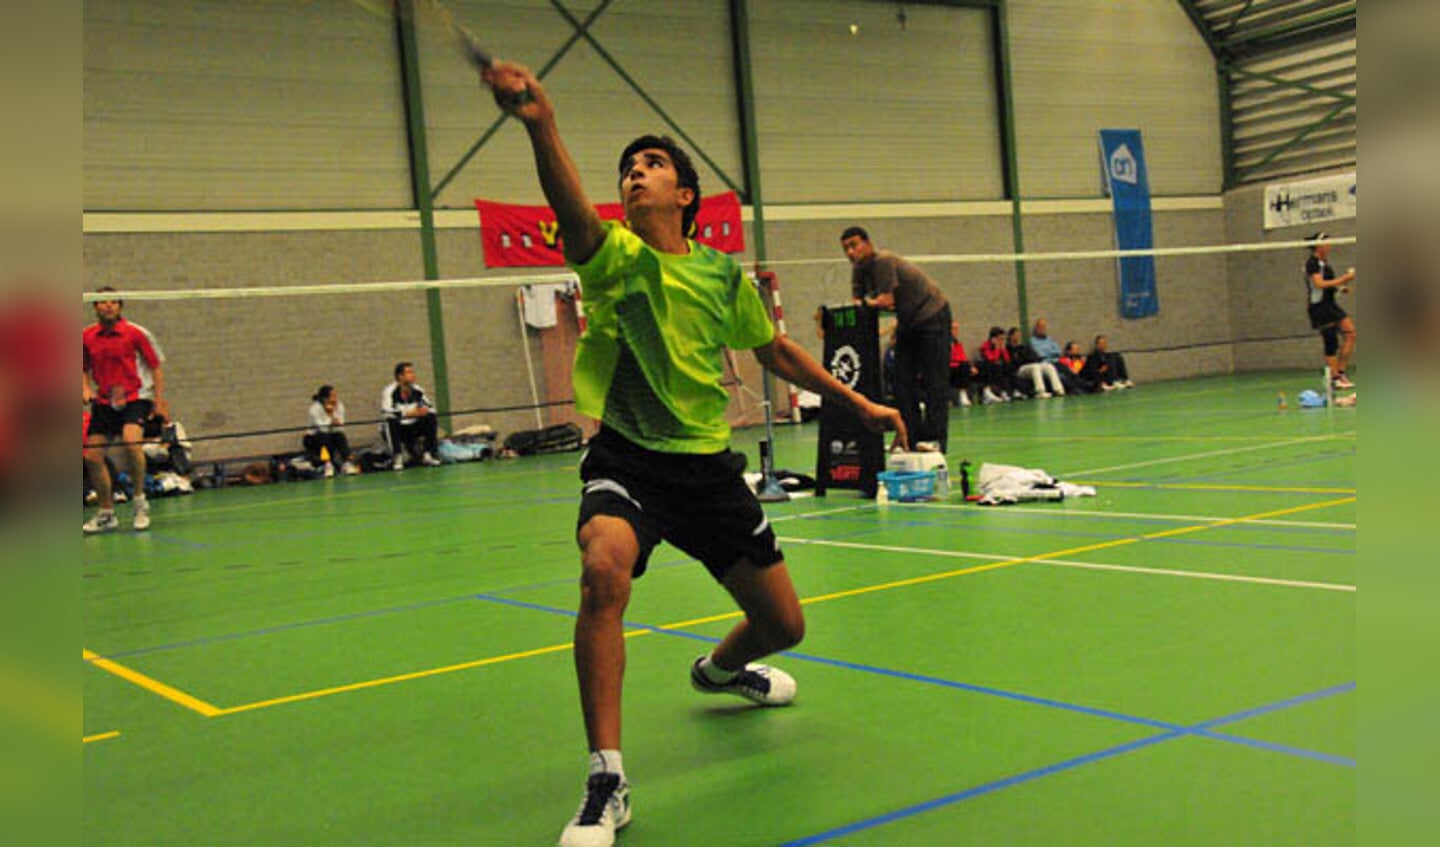 Het Carlton GT Start Up badmintontoernooi in Bavel. foto Perry Roovers